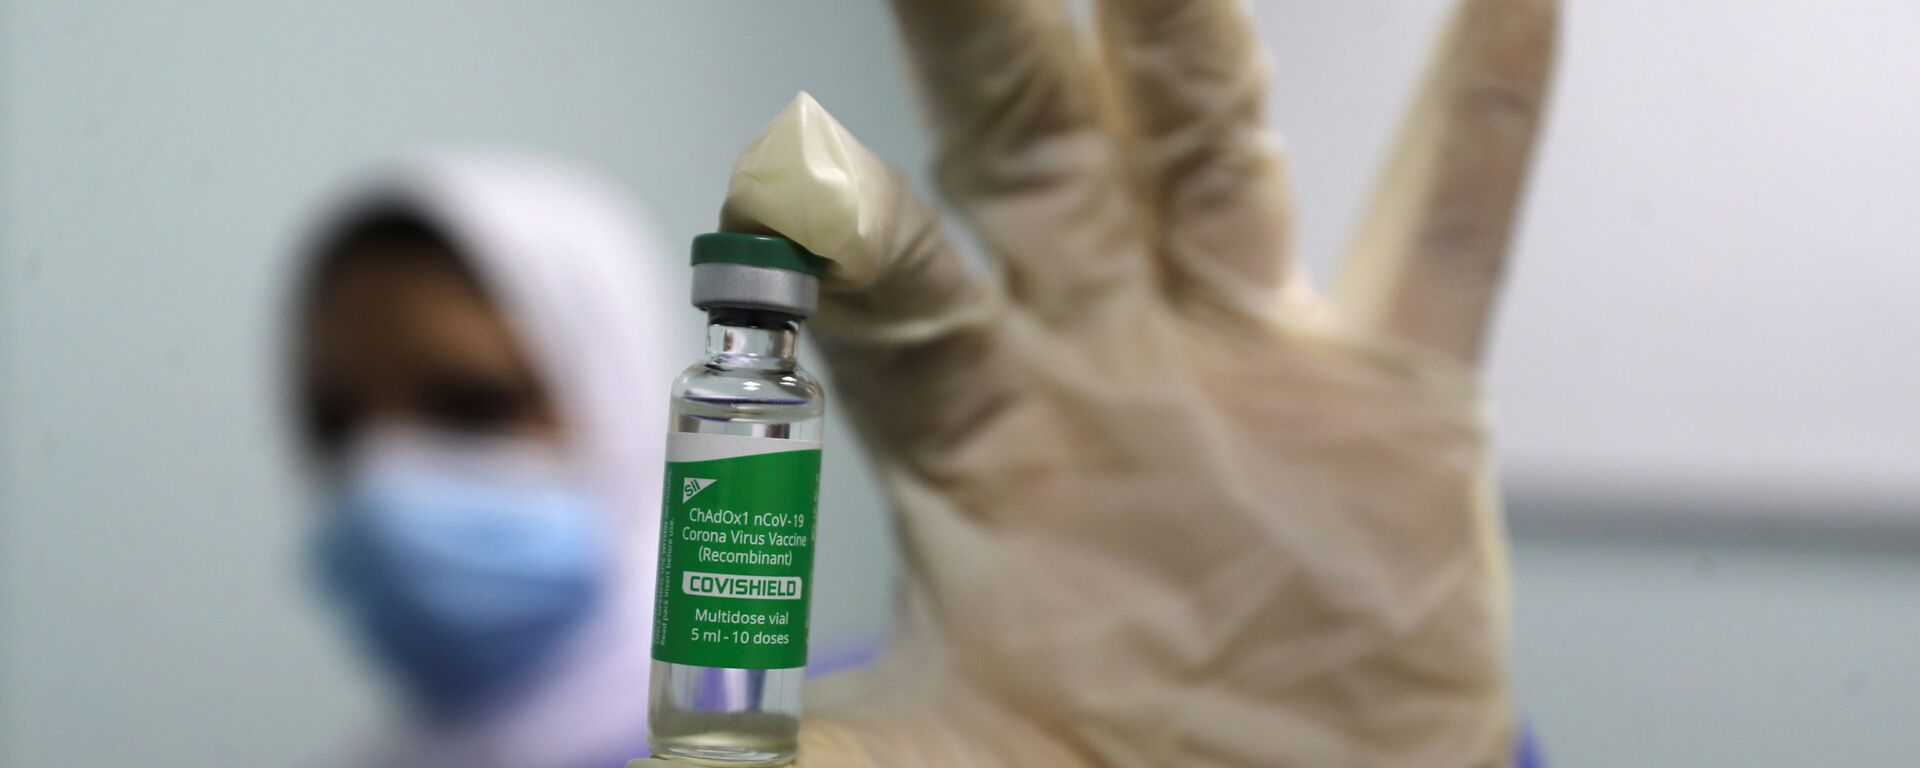 بدء تطعيم واسع النطاق في مصر ضد فيروس كورونا (كوفيد-19)، القاهرة، 4 مارس 2021 - سبوتنيك عربي, 1920, 17.05.2021